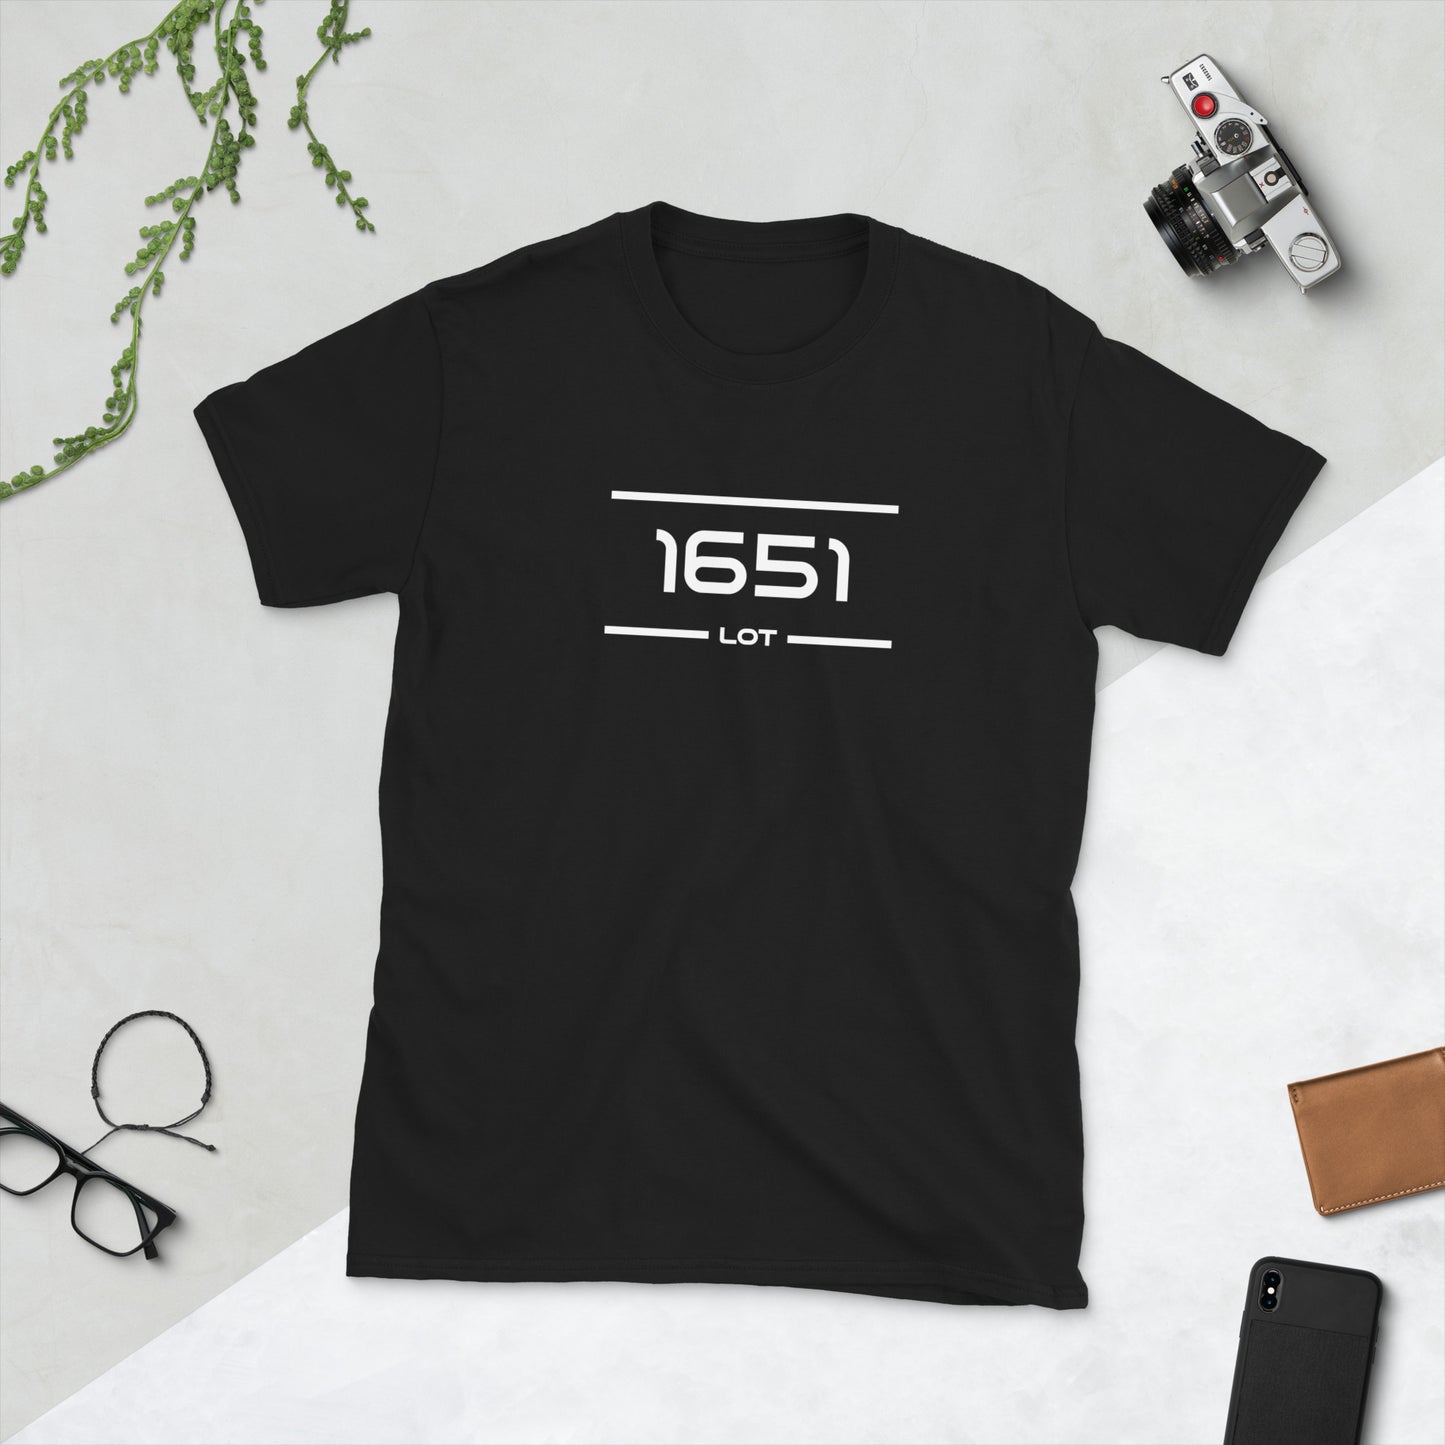 Tshirt - 1651 - Lot